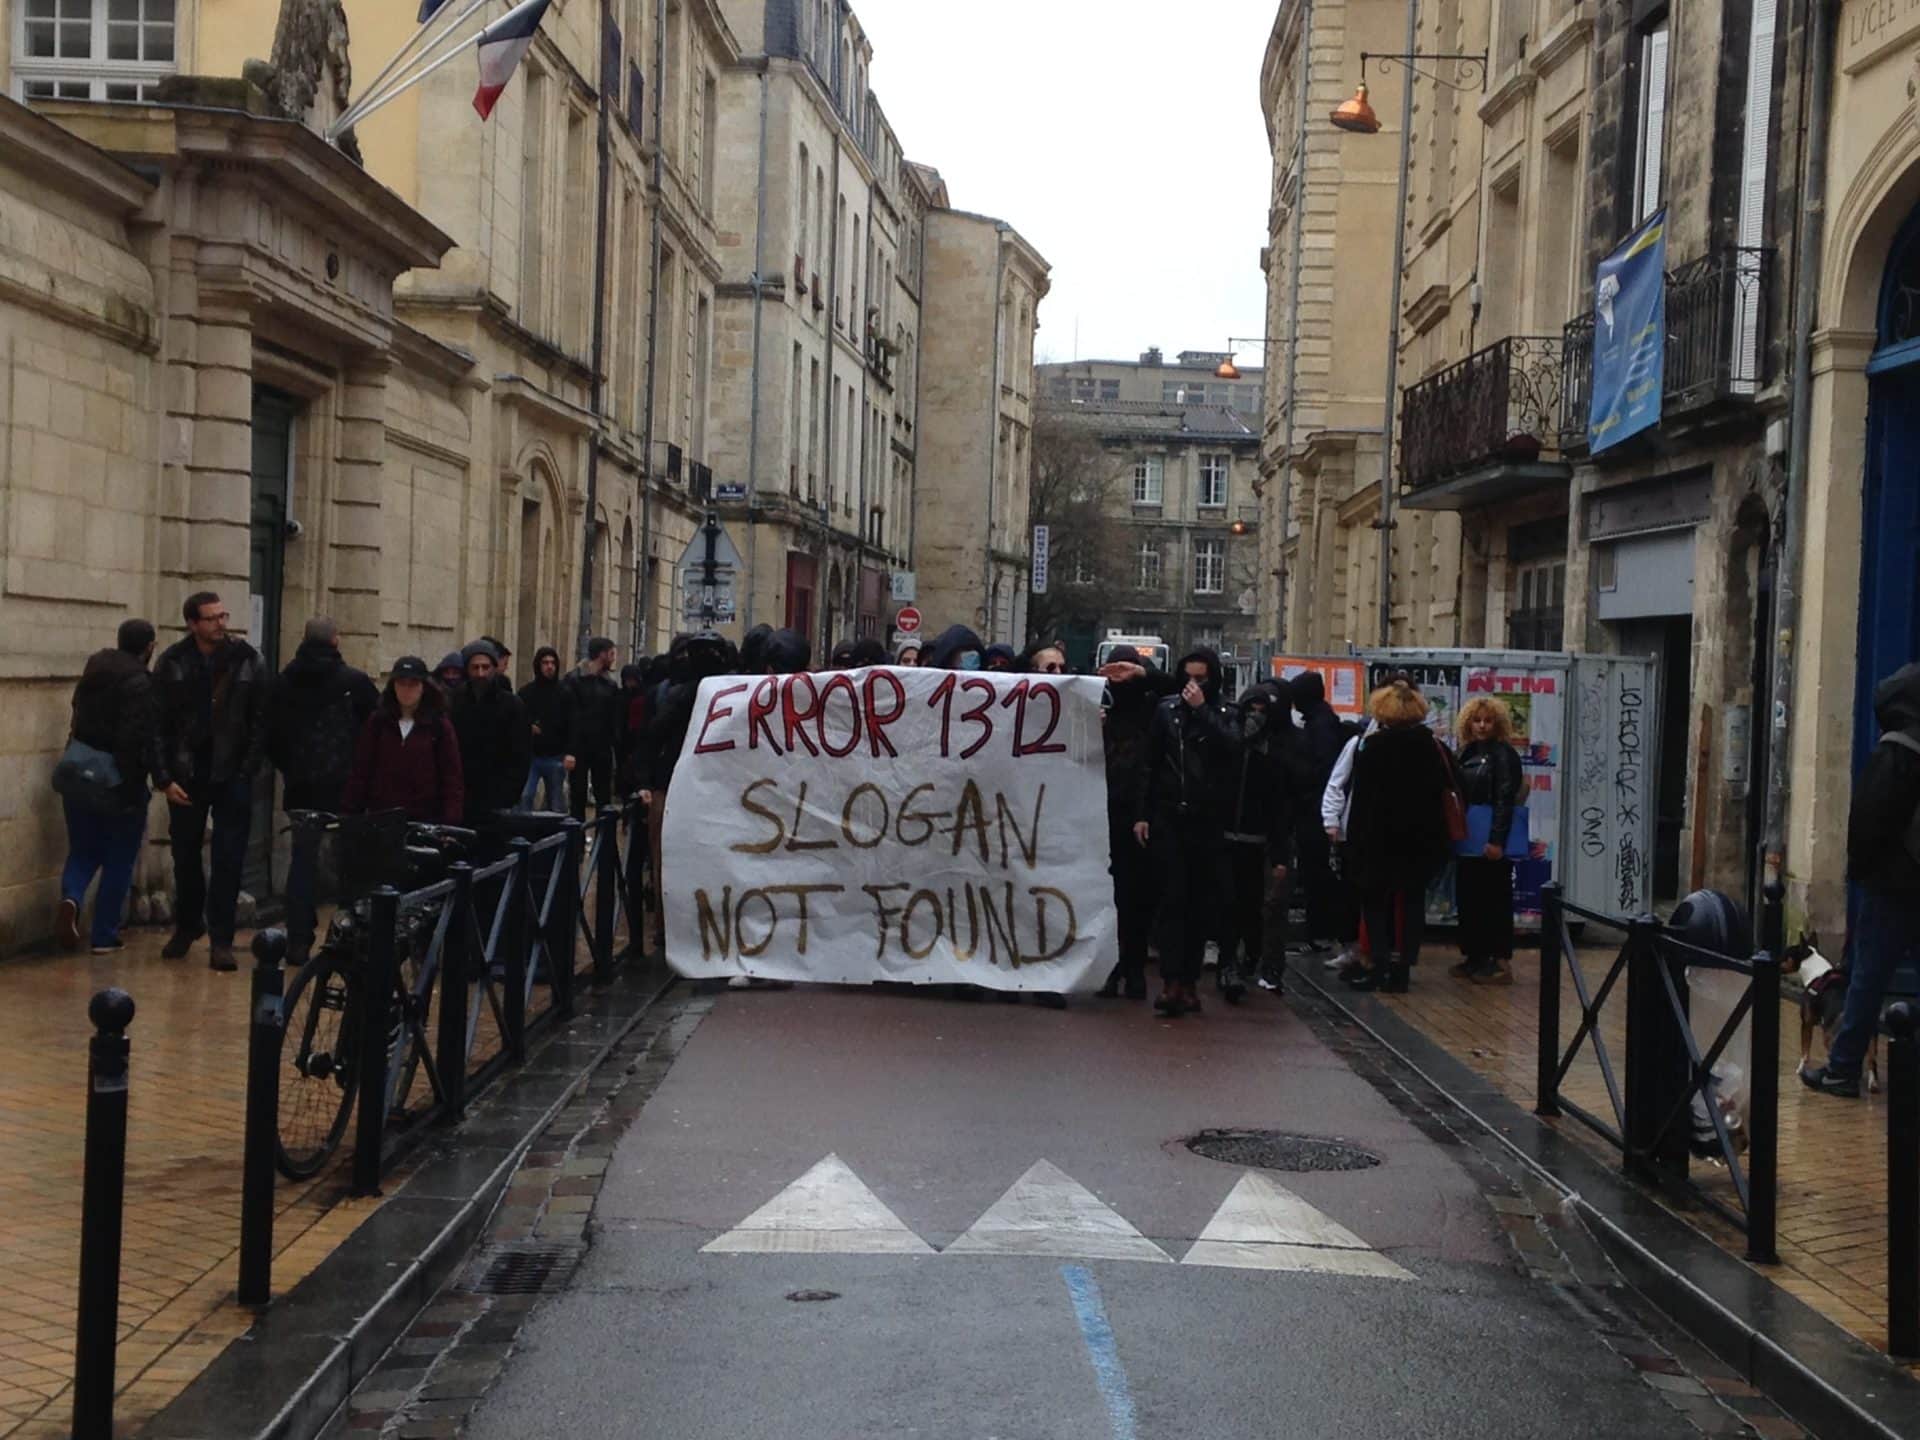 Affrontements violents entre police et étudiants, le blocage de la Victoire contesté